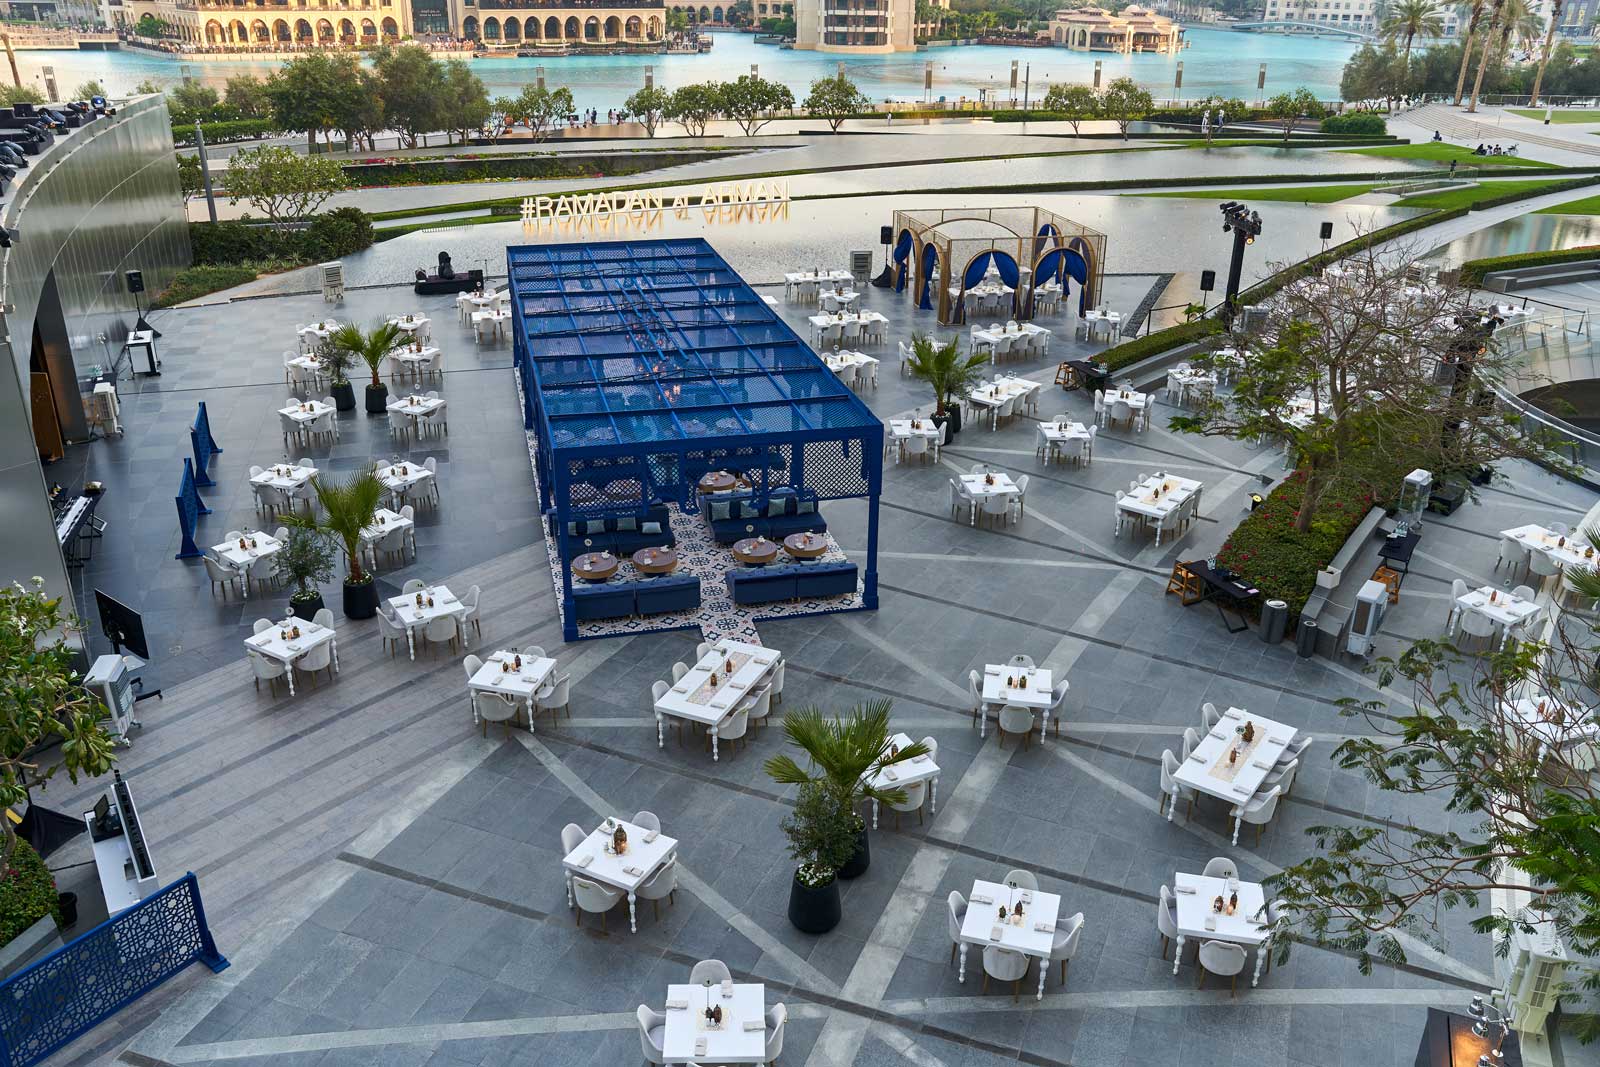 Review: Iftar at Armani/Pavilion, Armani Hotel Dubai